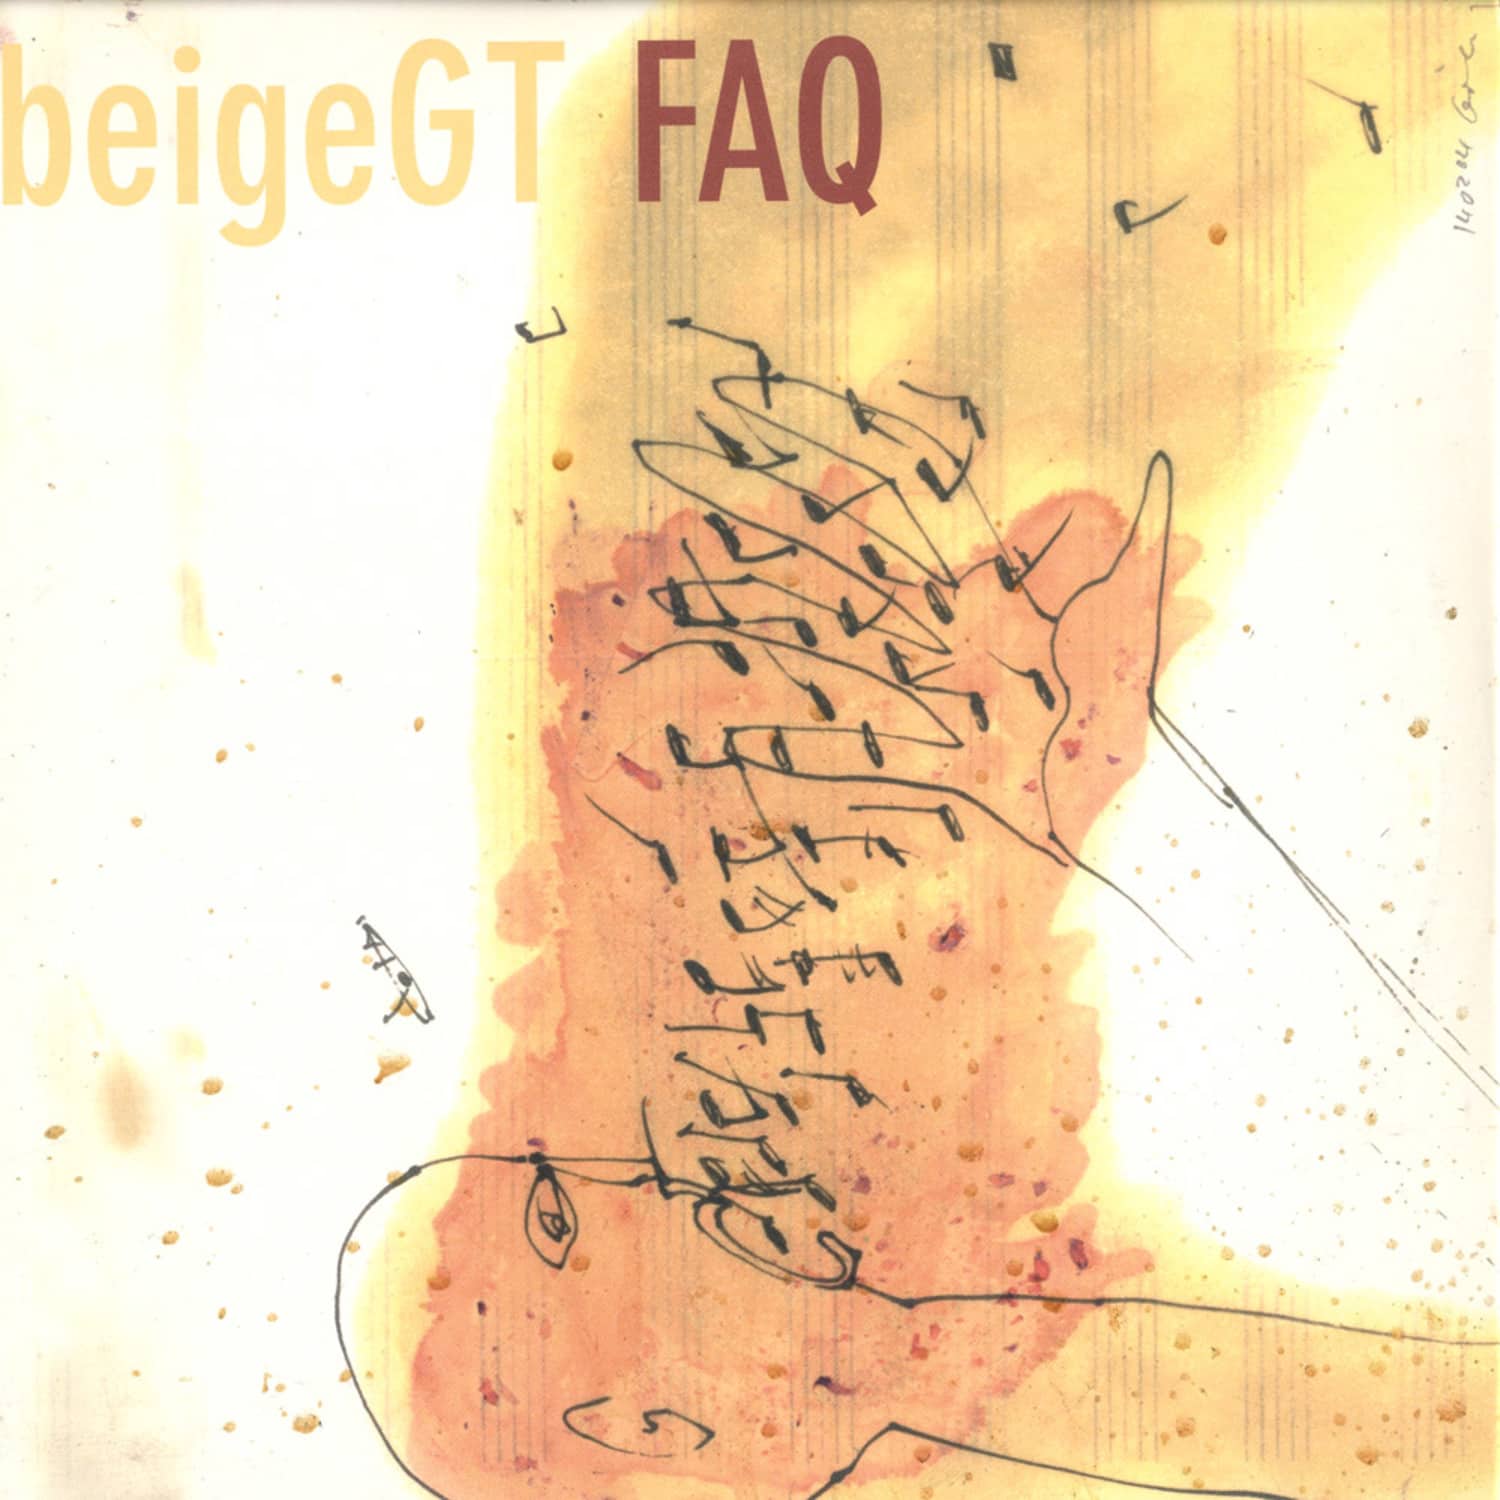 Beige GT - FAQ